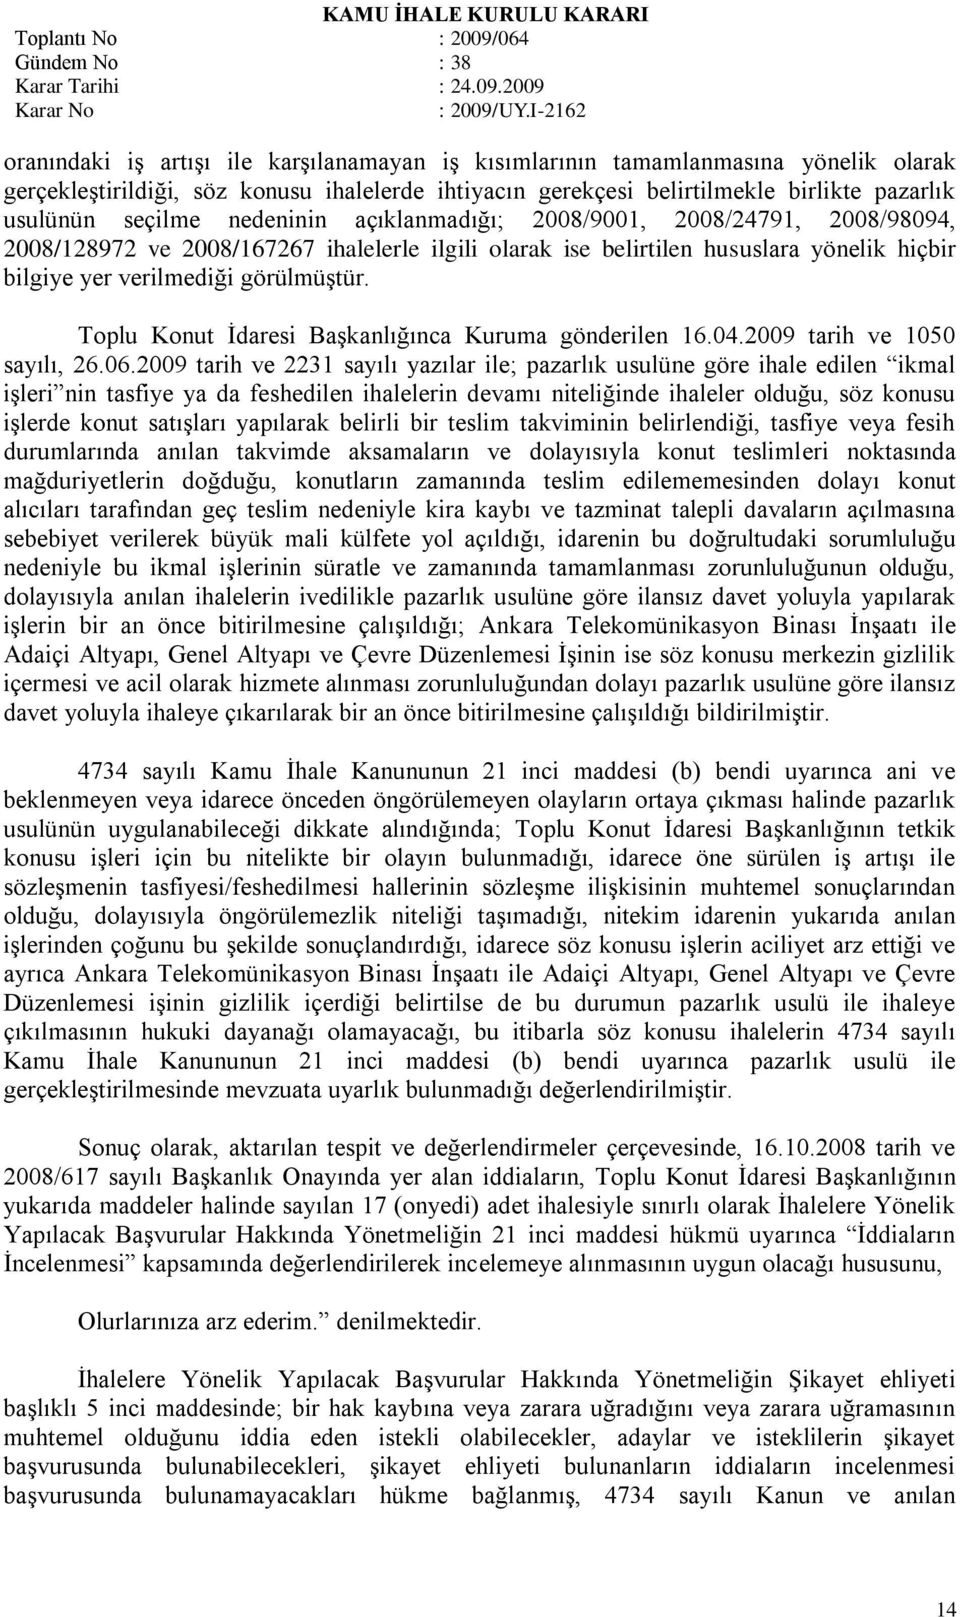 Toplu Konut Ġdaresi BaĢkanlığınca Kuruma gönderilen 16.04.2009 tarih ve 1050 sayılı, 26.06.